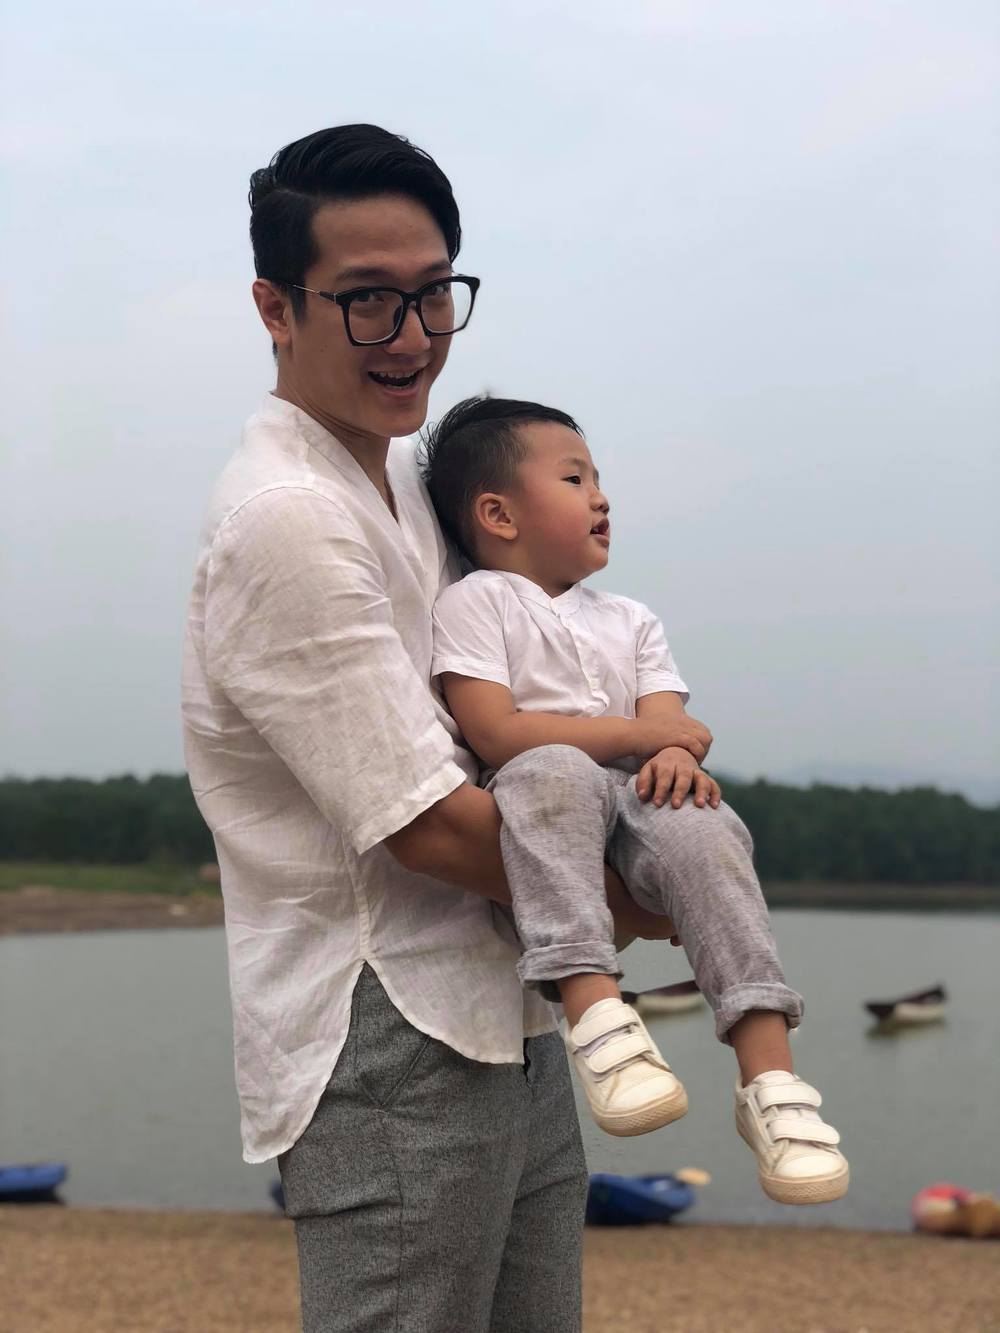 
Thu Quỳnh nhận ra cái sai trong cách xử lý câu chuyện cùng chồng cũ khiến con trai không thể sống cùng bố mẹ. (Ảnh: Facebook Đào Chí Nhân)